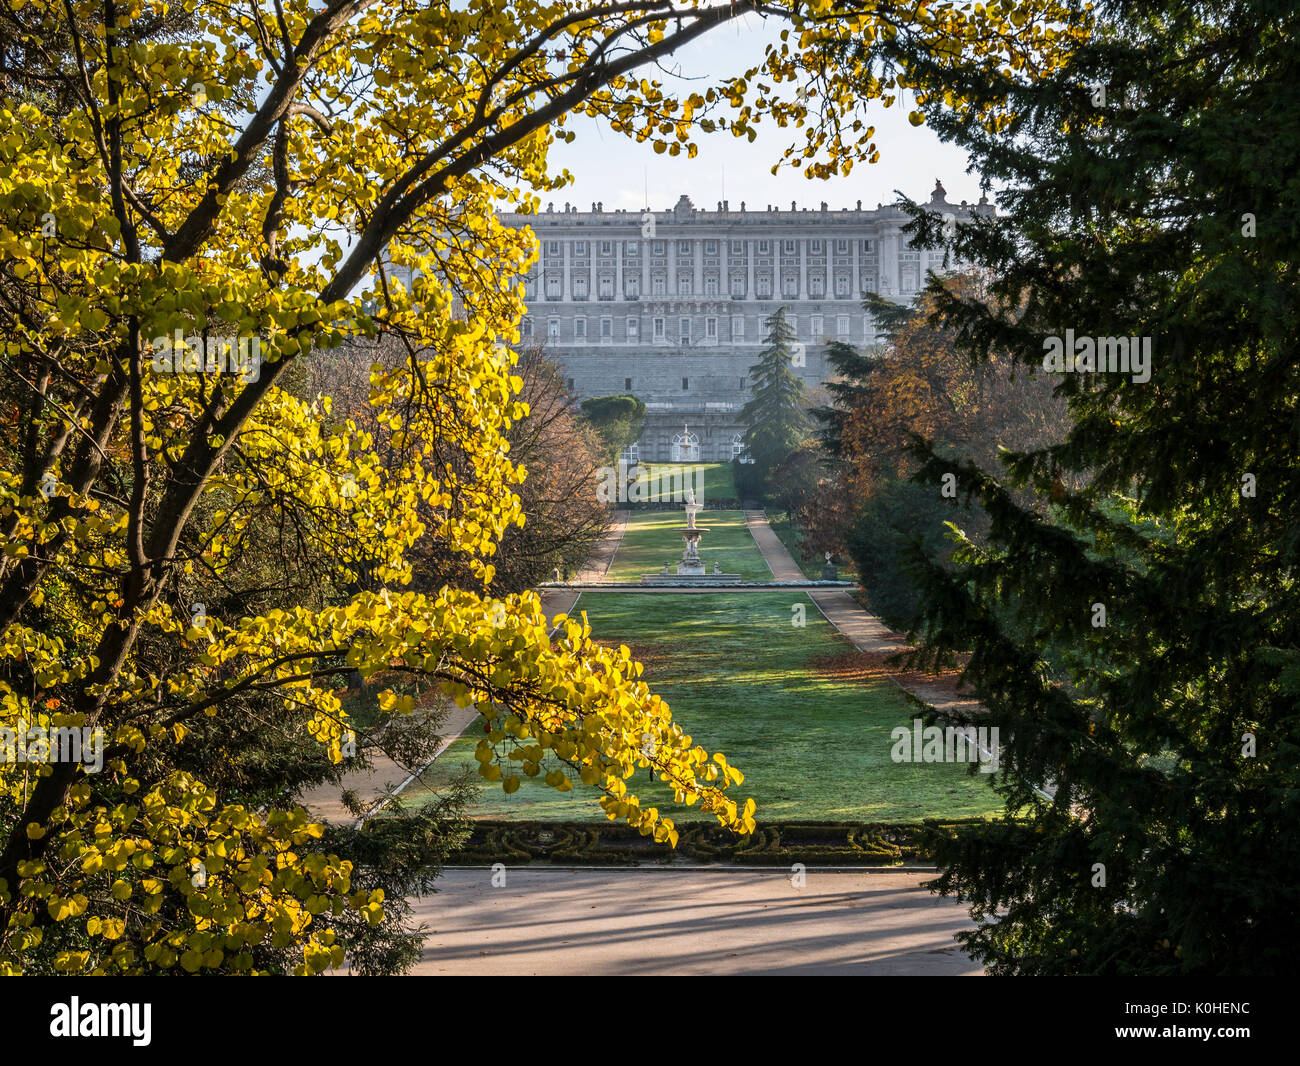 Palacio Real visto desde el Campo del Moro. Madrid capital. España Stock Photo